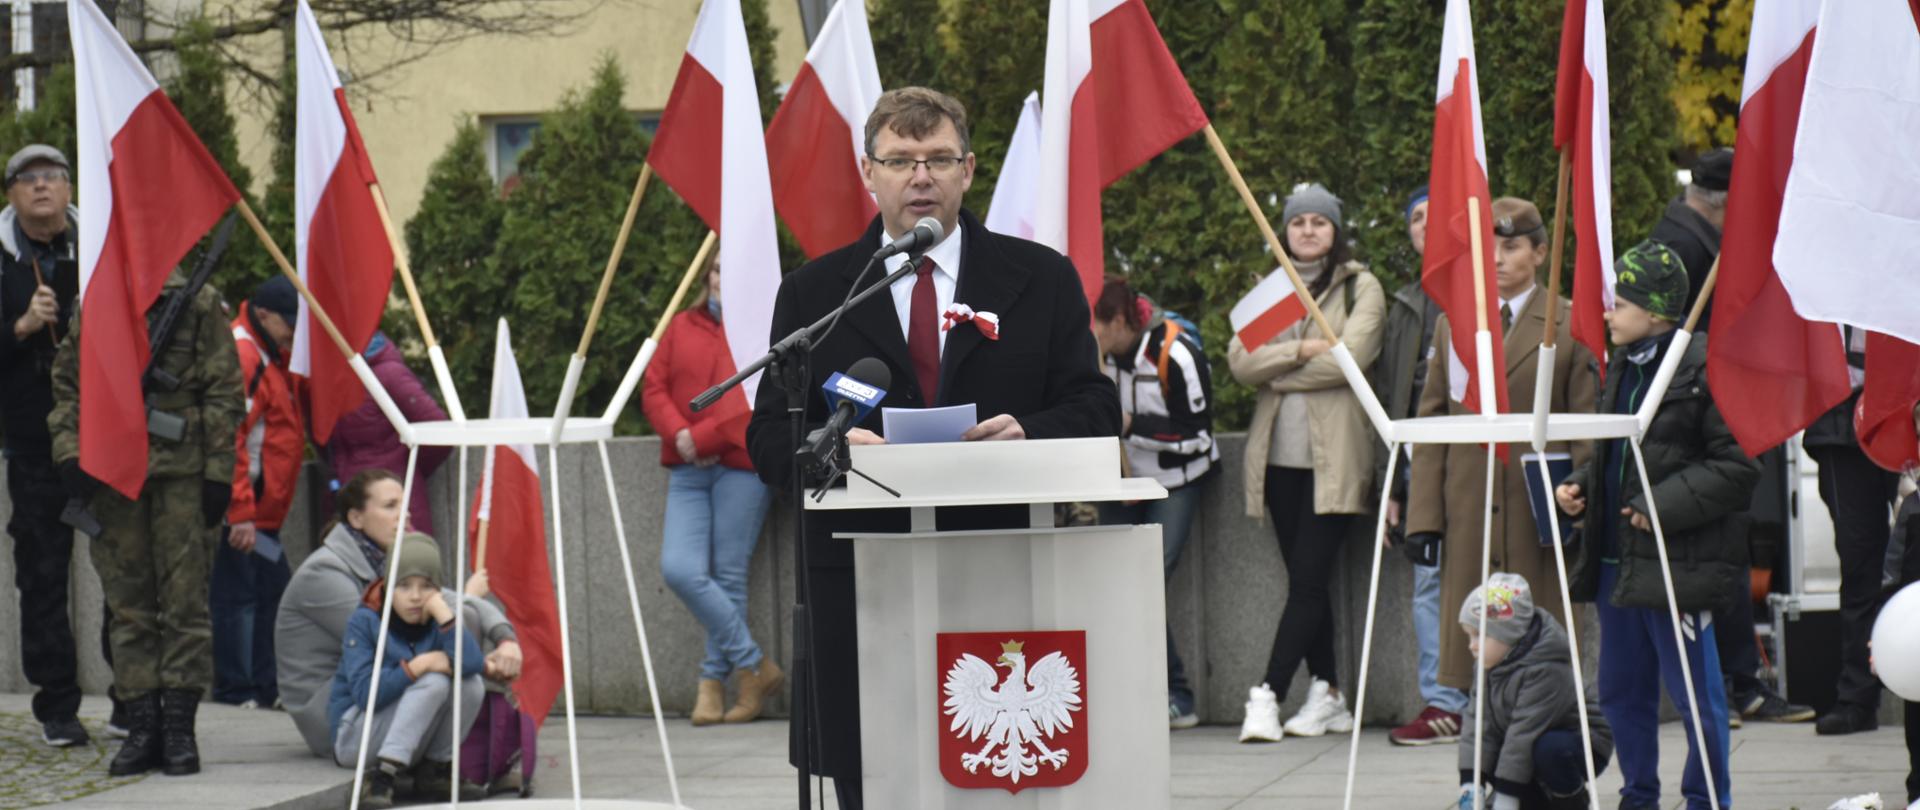 Wojewódzkie obchody 104 Rocznicy Odzyskania Niepodległości przez Polskę